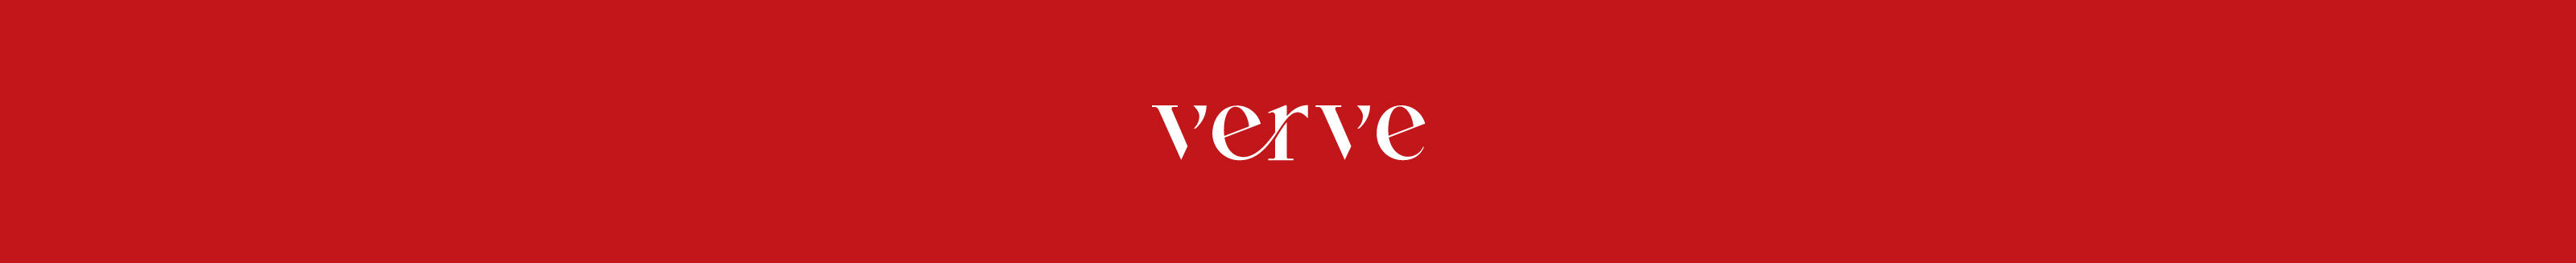 Verve Adv's profile banner